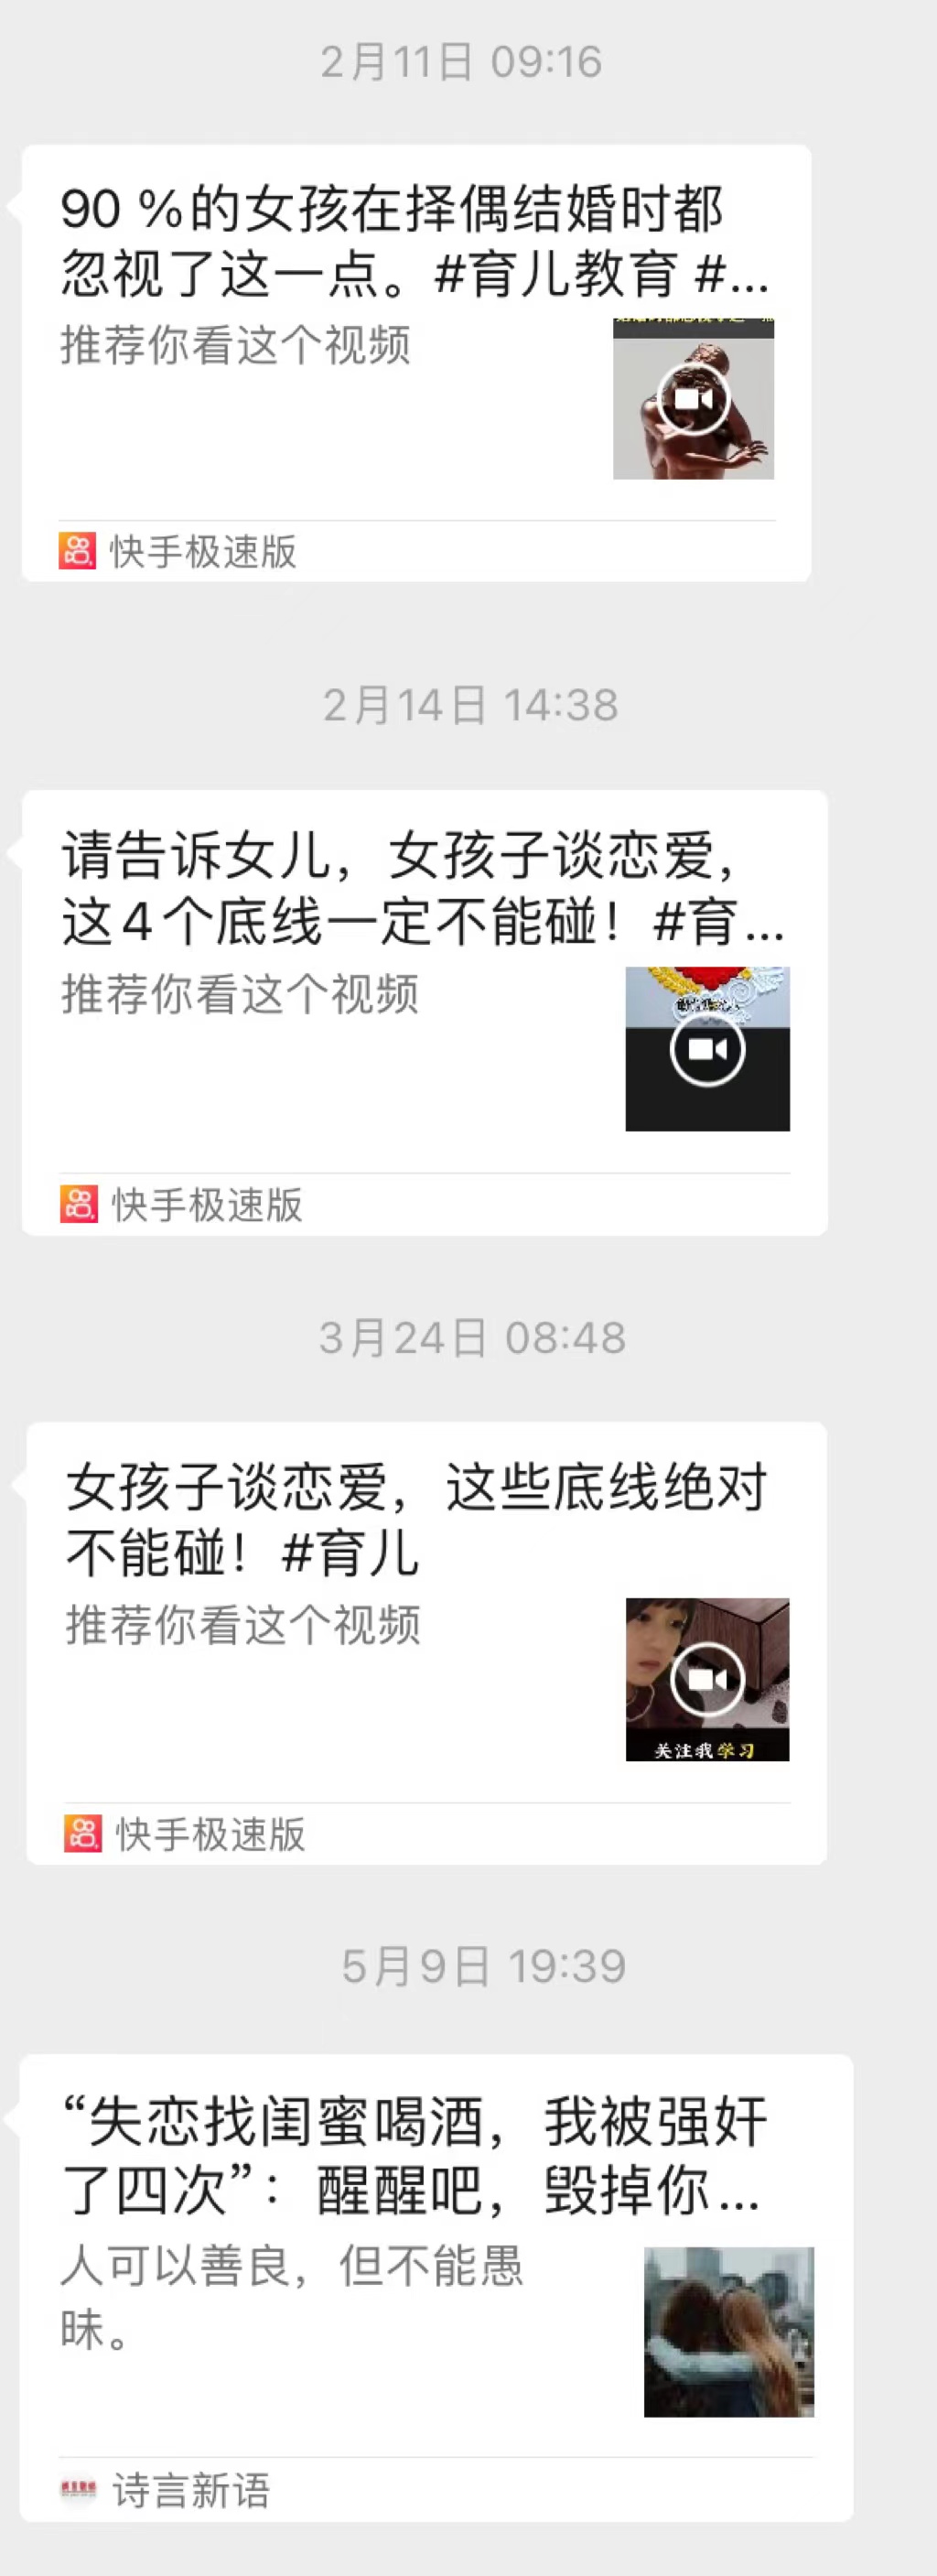 刘彤的姆妈发给她的“素质”视频 受访者供图